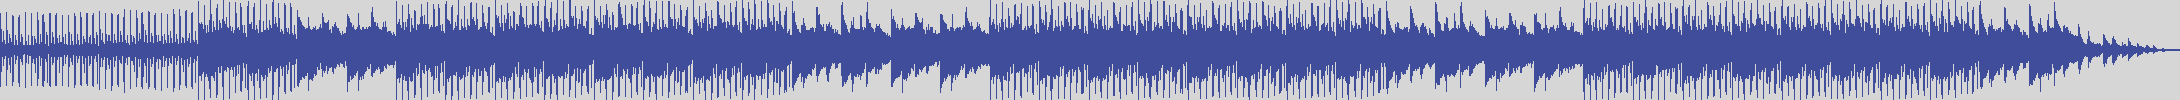 noclouds_chillout [NOC049] Flavas - Flavas [Original Mix] audio wave form